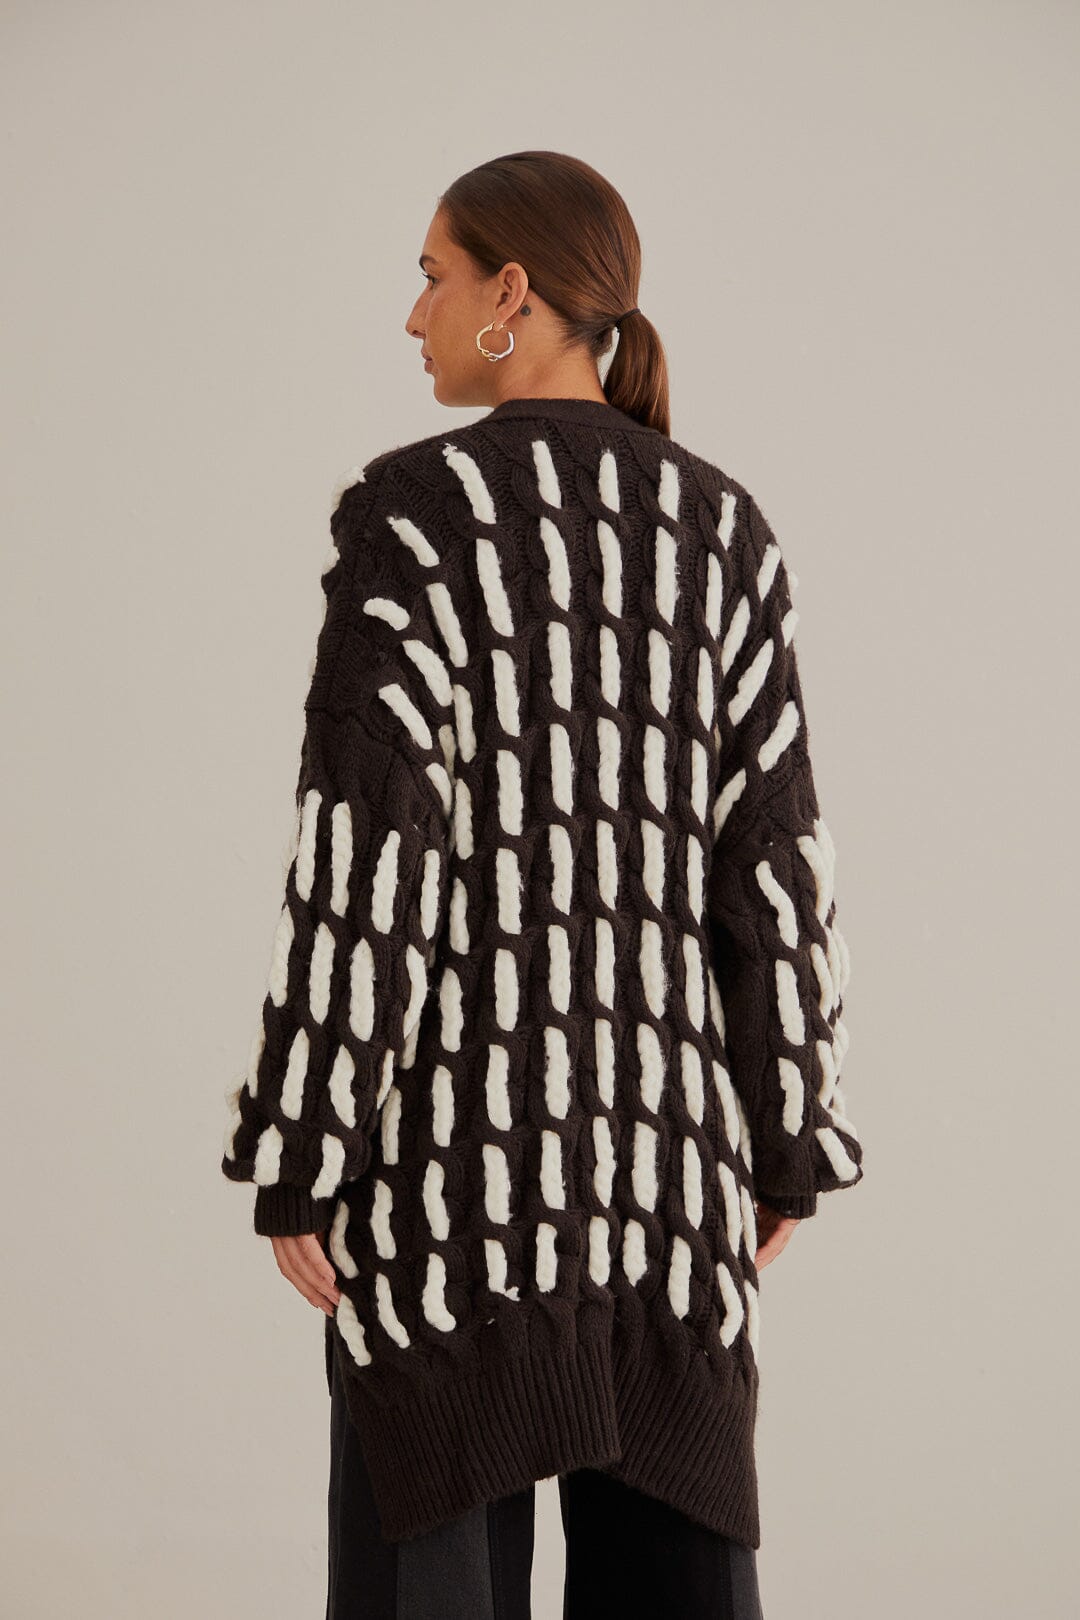 Cardigan en tricot texturé noir et blanc